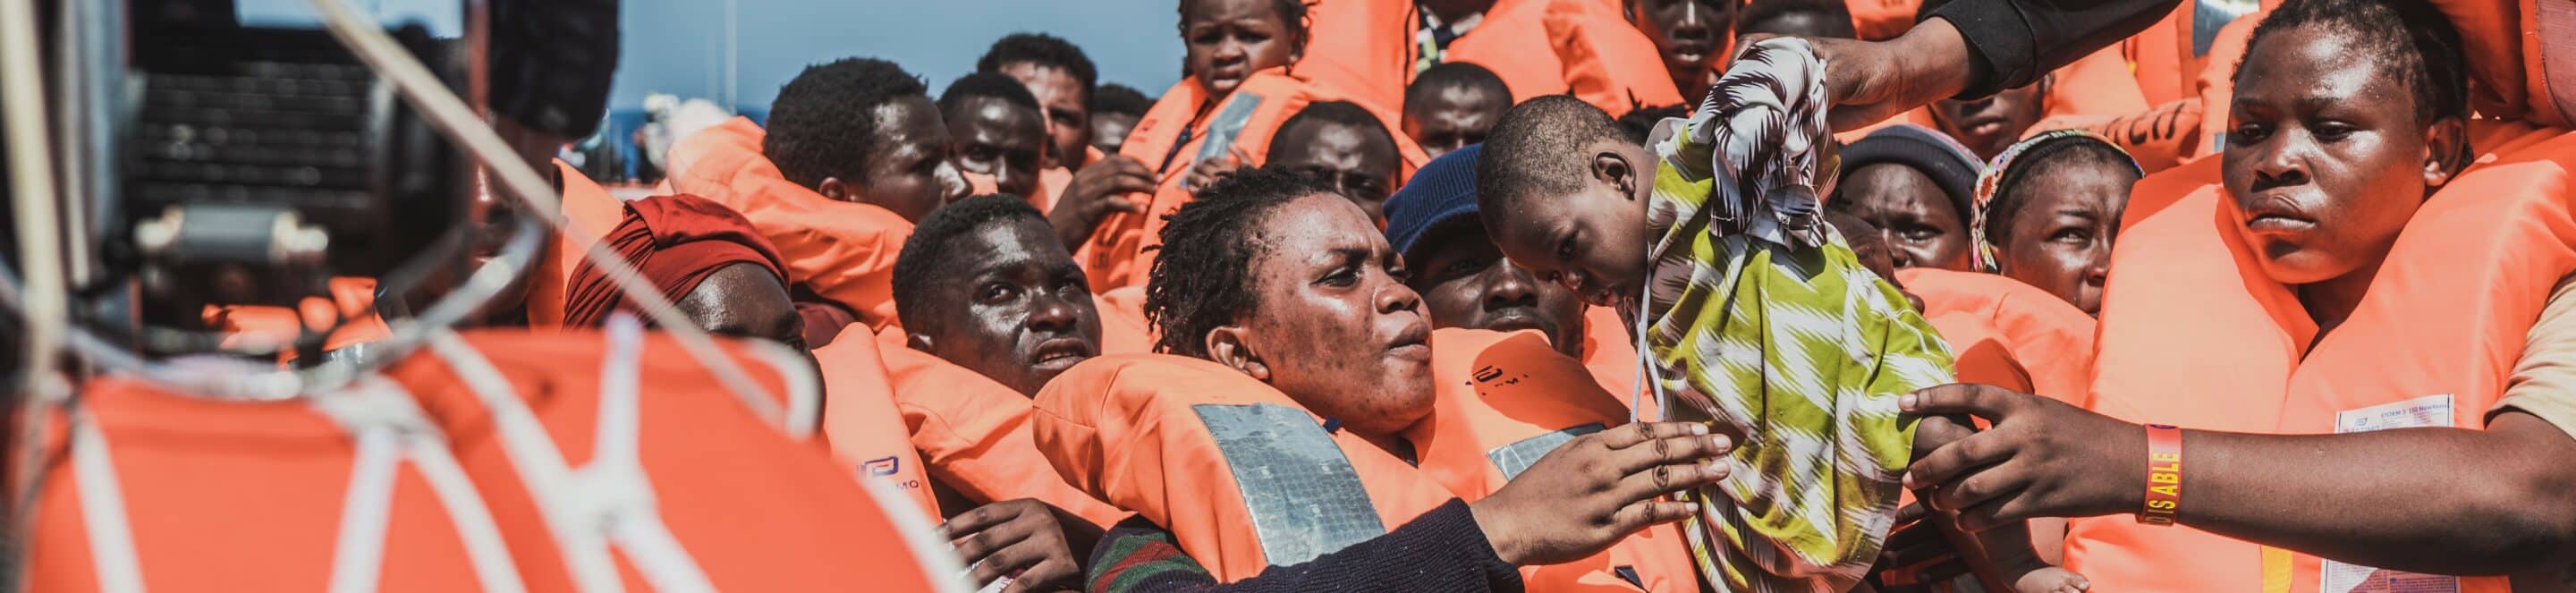 Sauvetage d'un bébé d'une embarcation en Méditerranée.